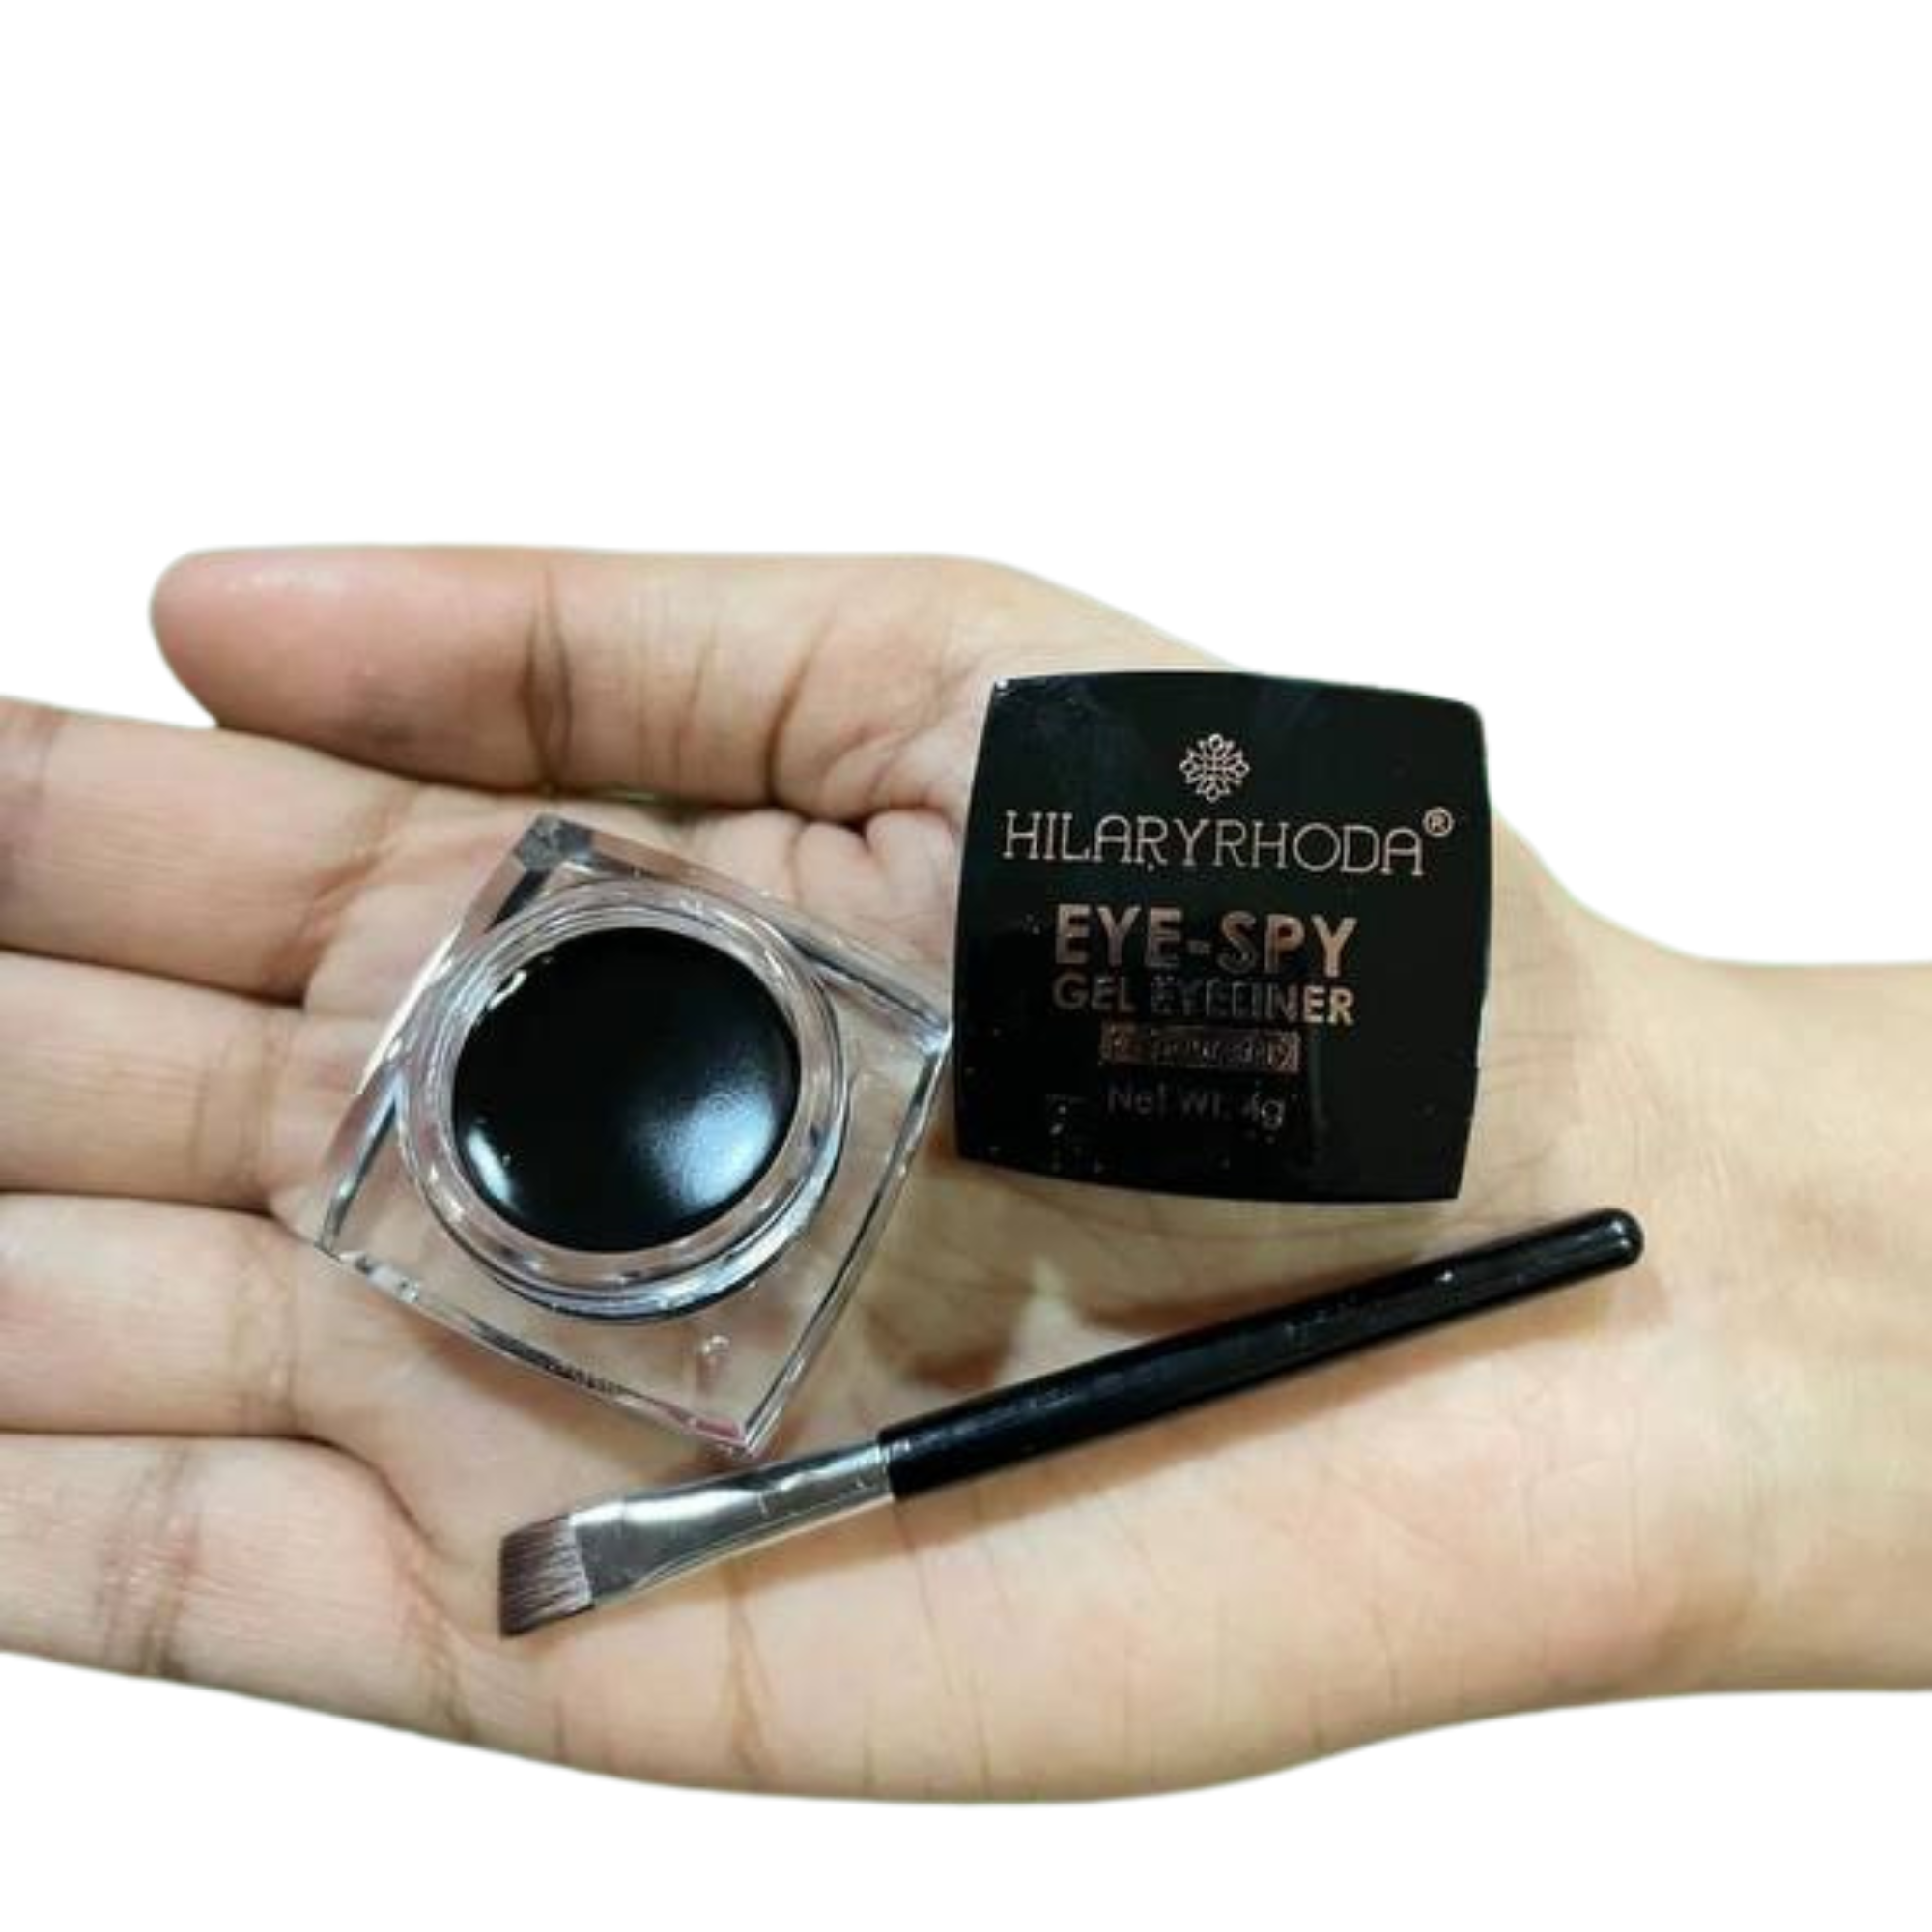 Hilary Rhoda Eye Spy Gel Eyeliner Kajal Smudge-proof & Waterproof Eyeliner 4 g (Black)